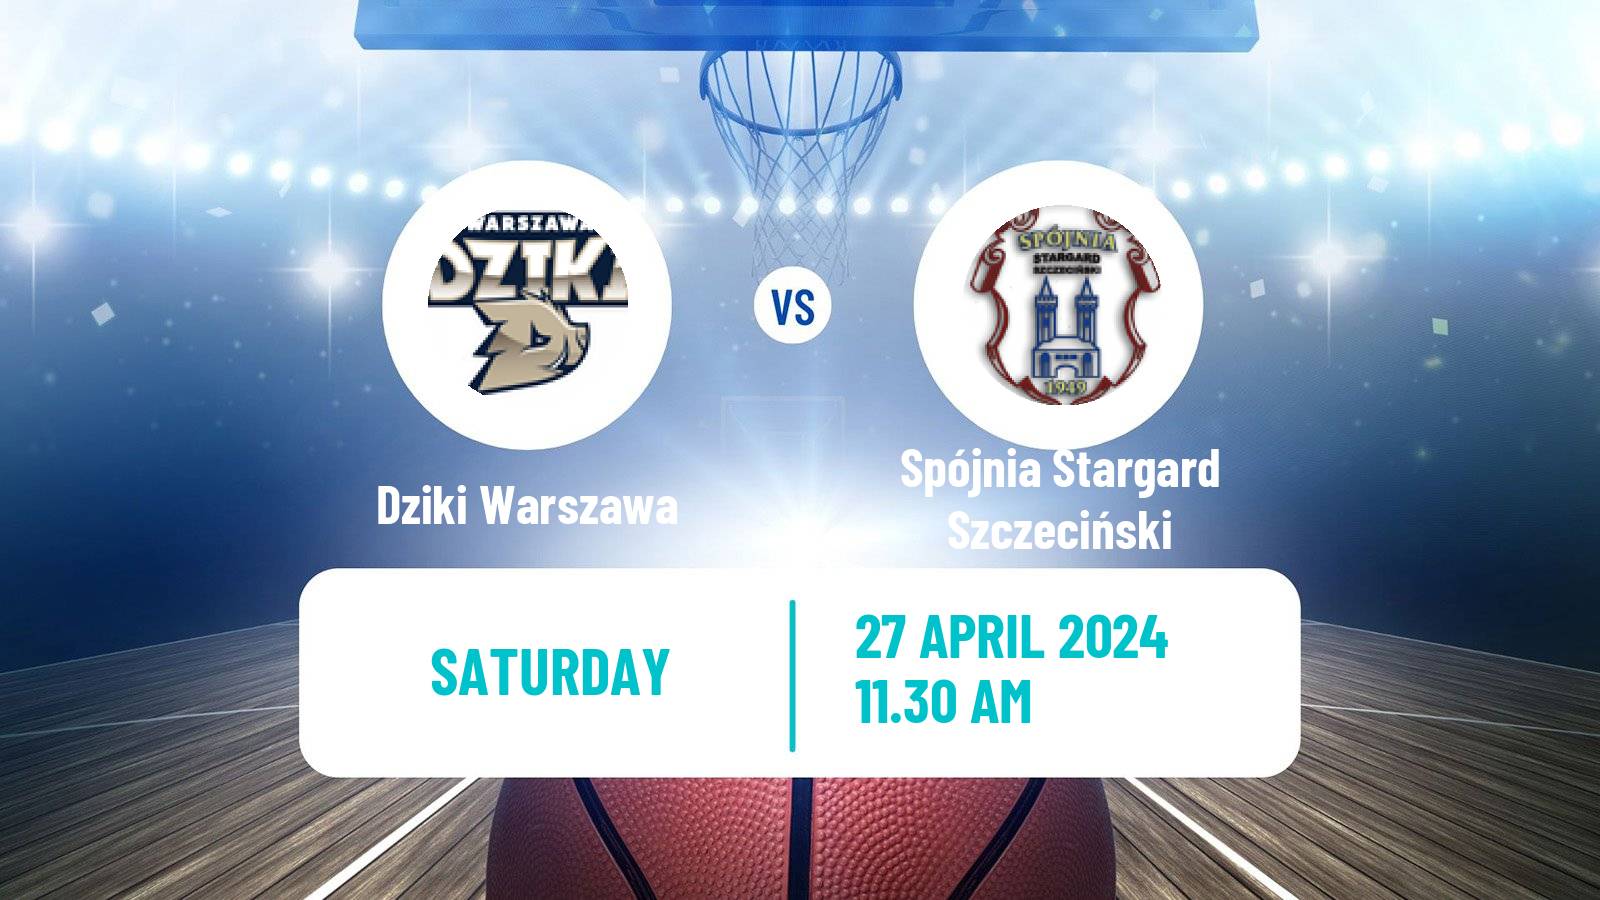 Basketball Polish Basket Liga Dziki Warszawa - Spójnia Stargard Szczeciński